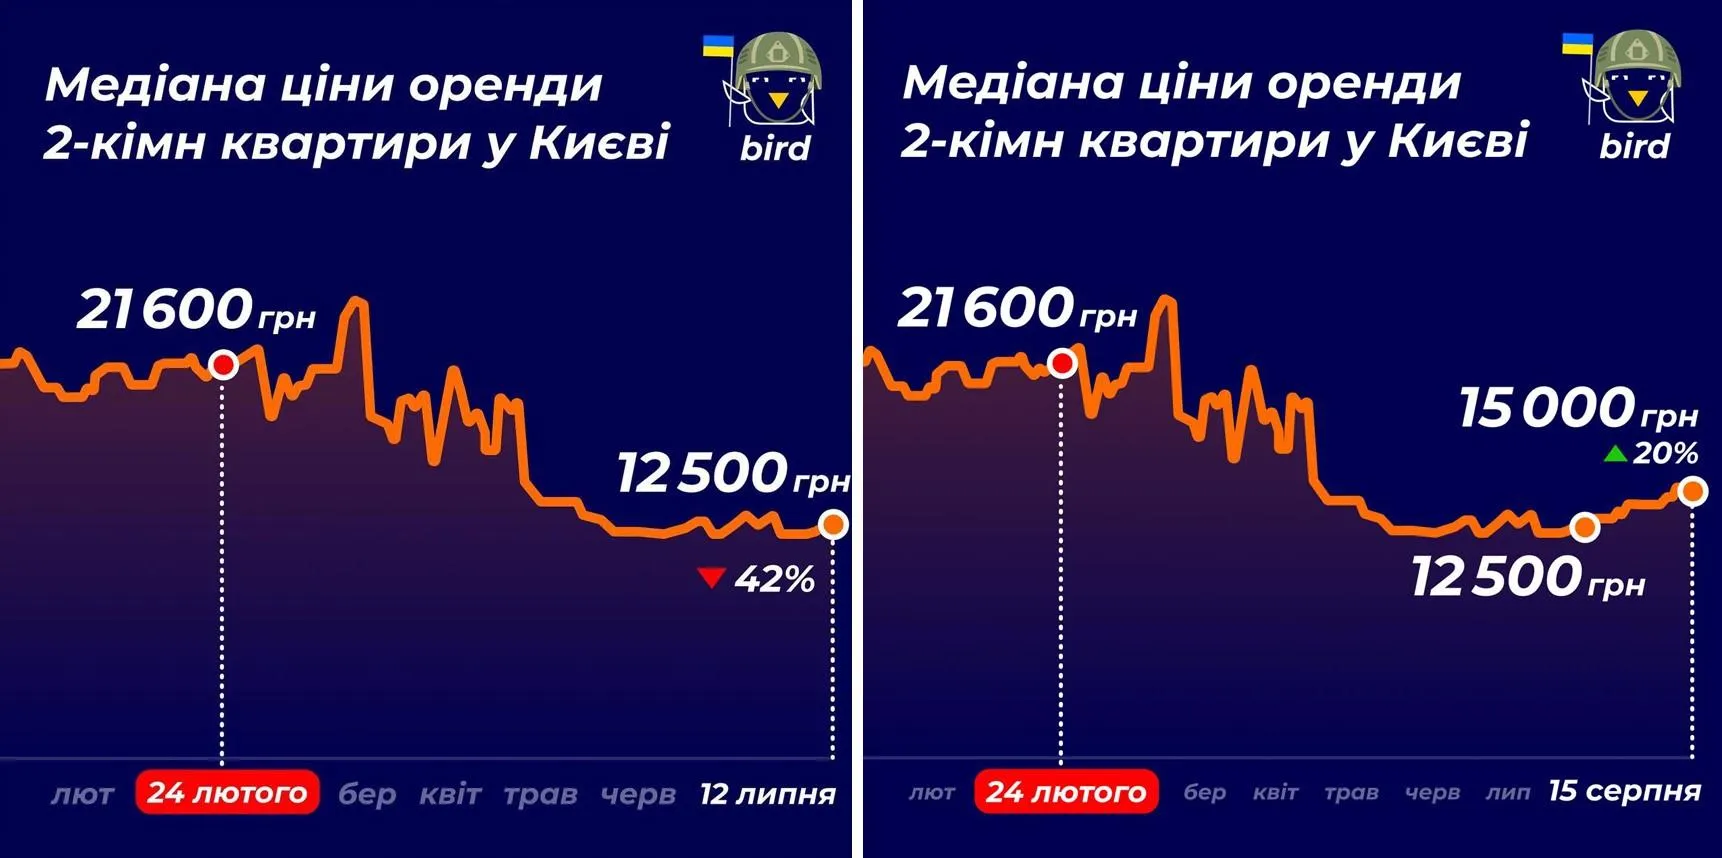 Ціна двокімнатних квартир у Києві 